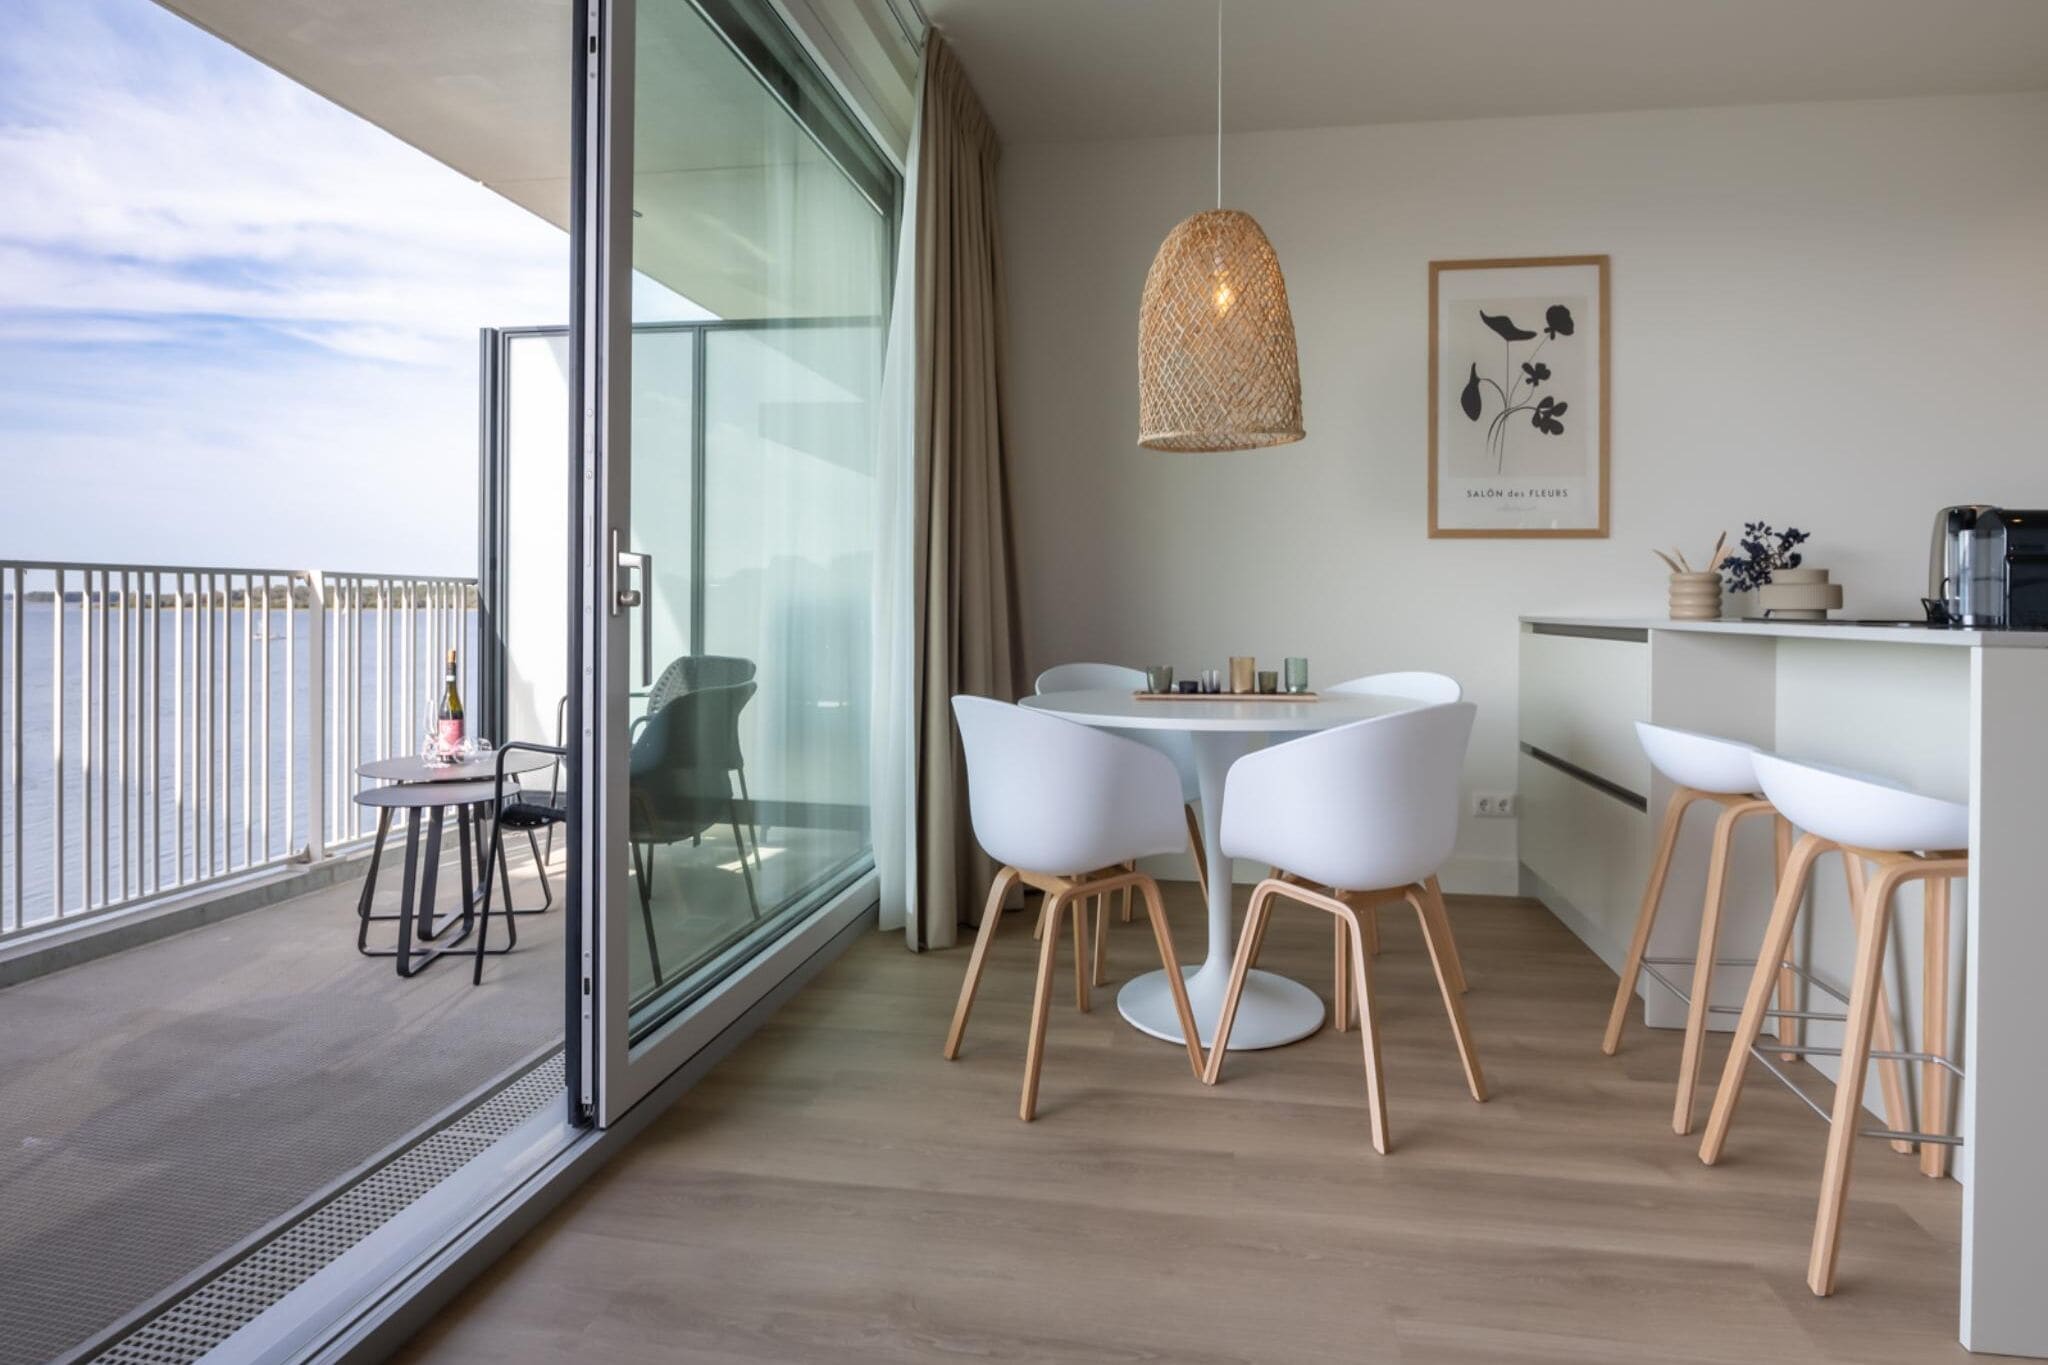 Ruim modern appartement met uitzicht op water